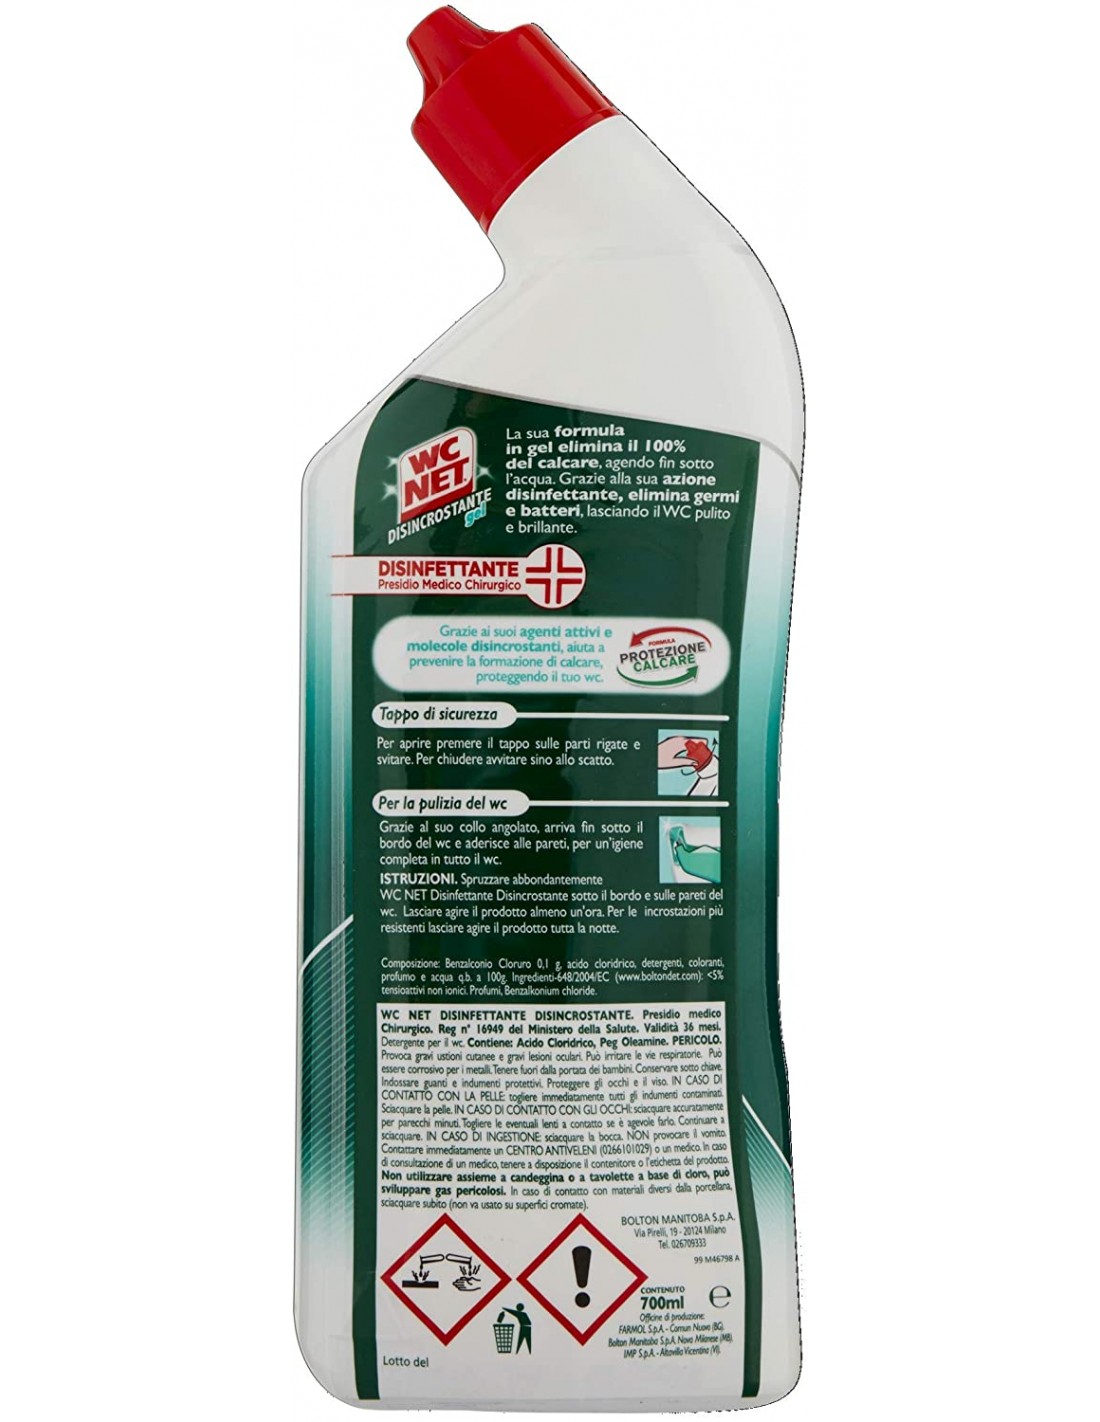 4x WC Net Candeggina GEL Formula Protezione Calcare Promo 3 Bottiglie